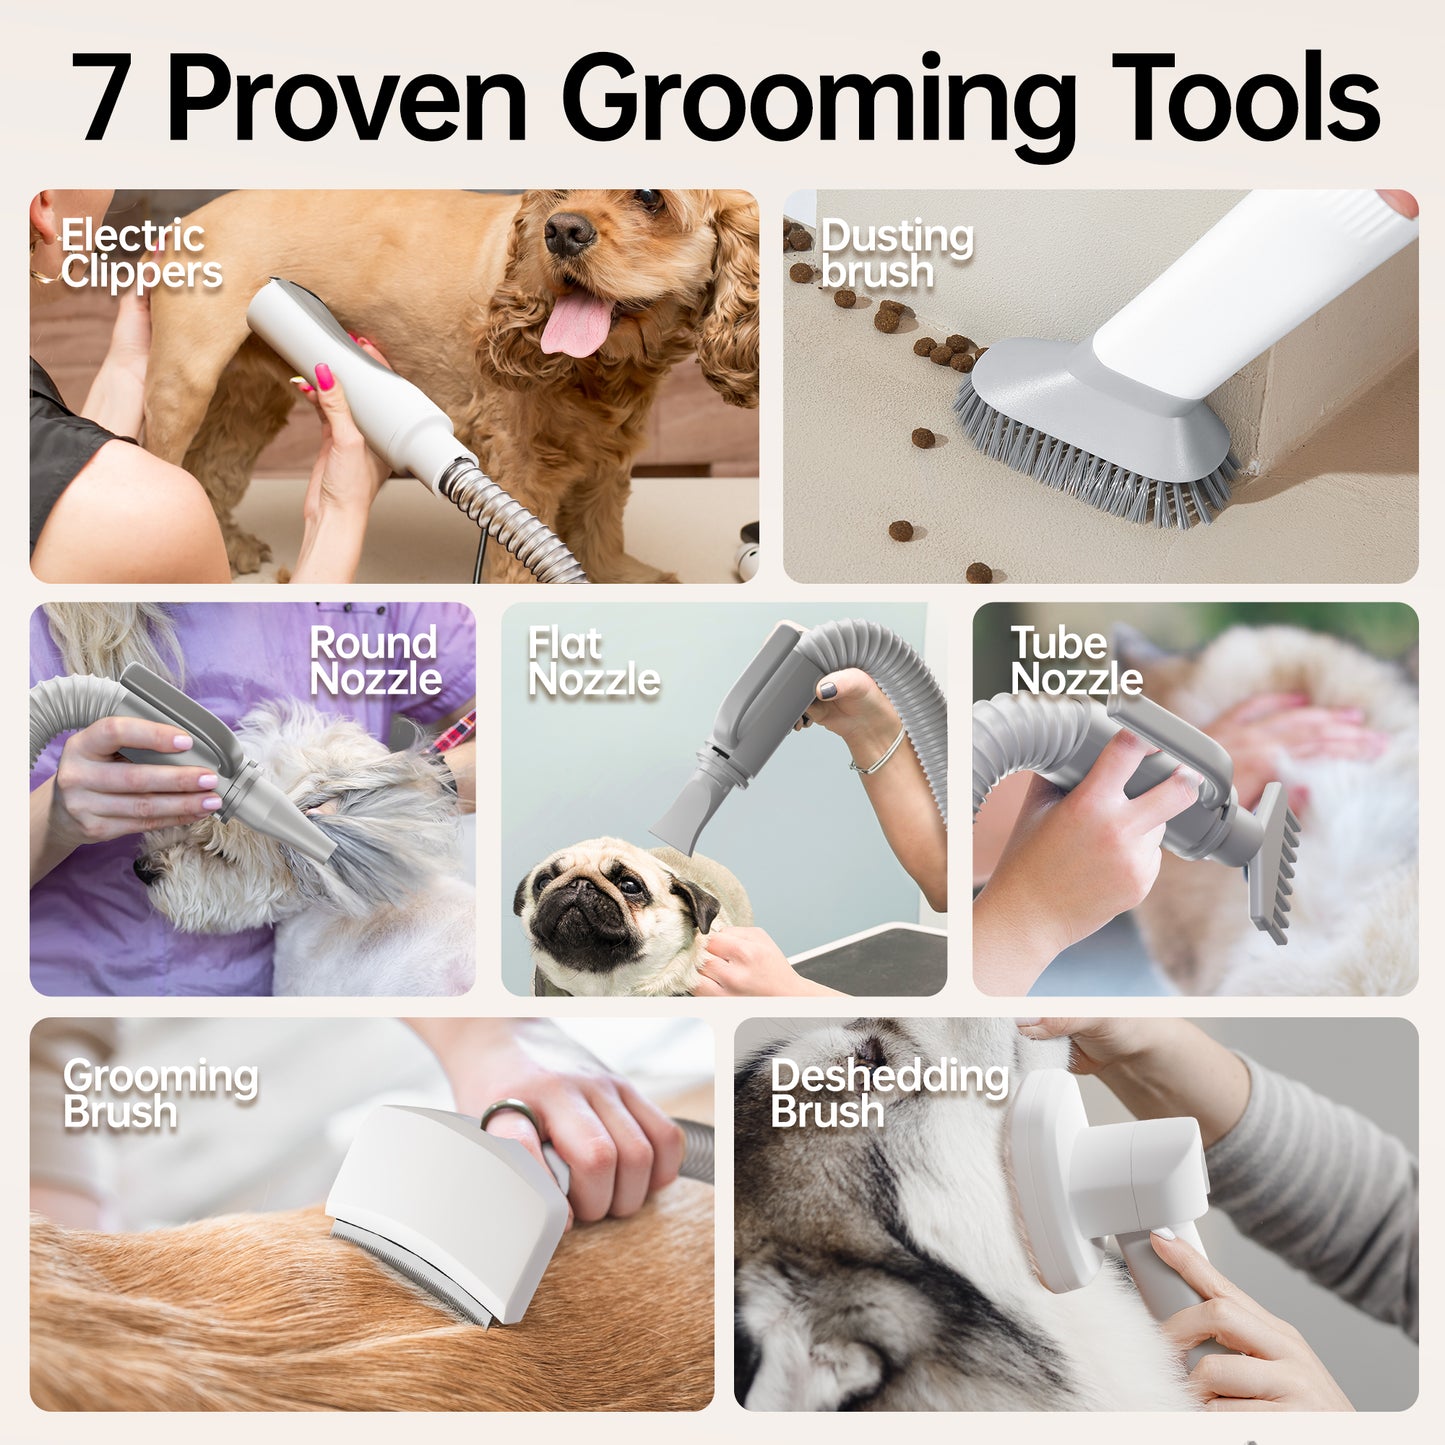 FIDOFAVE Grooming Aseo para perros y gatos de alta velocidad Succión por soplado todo en uno con 7 herramientas de aseo probadas